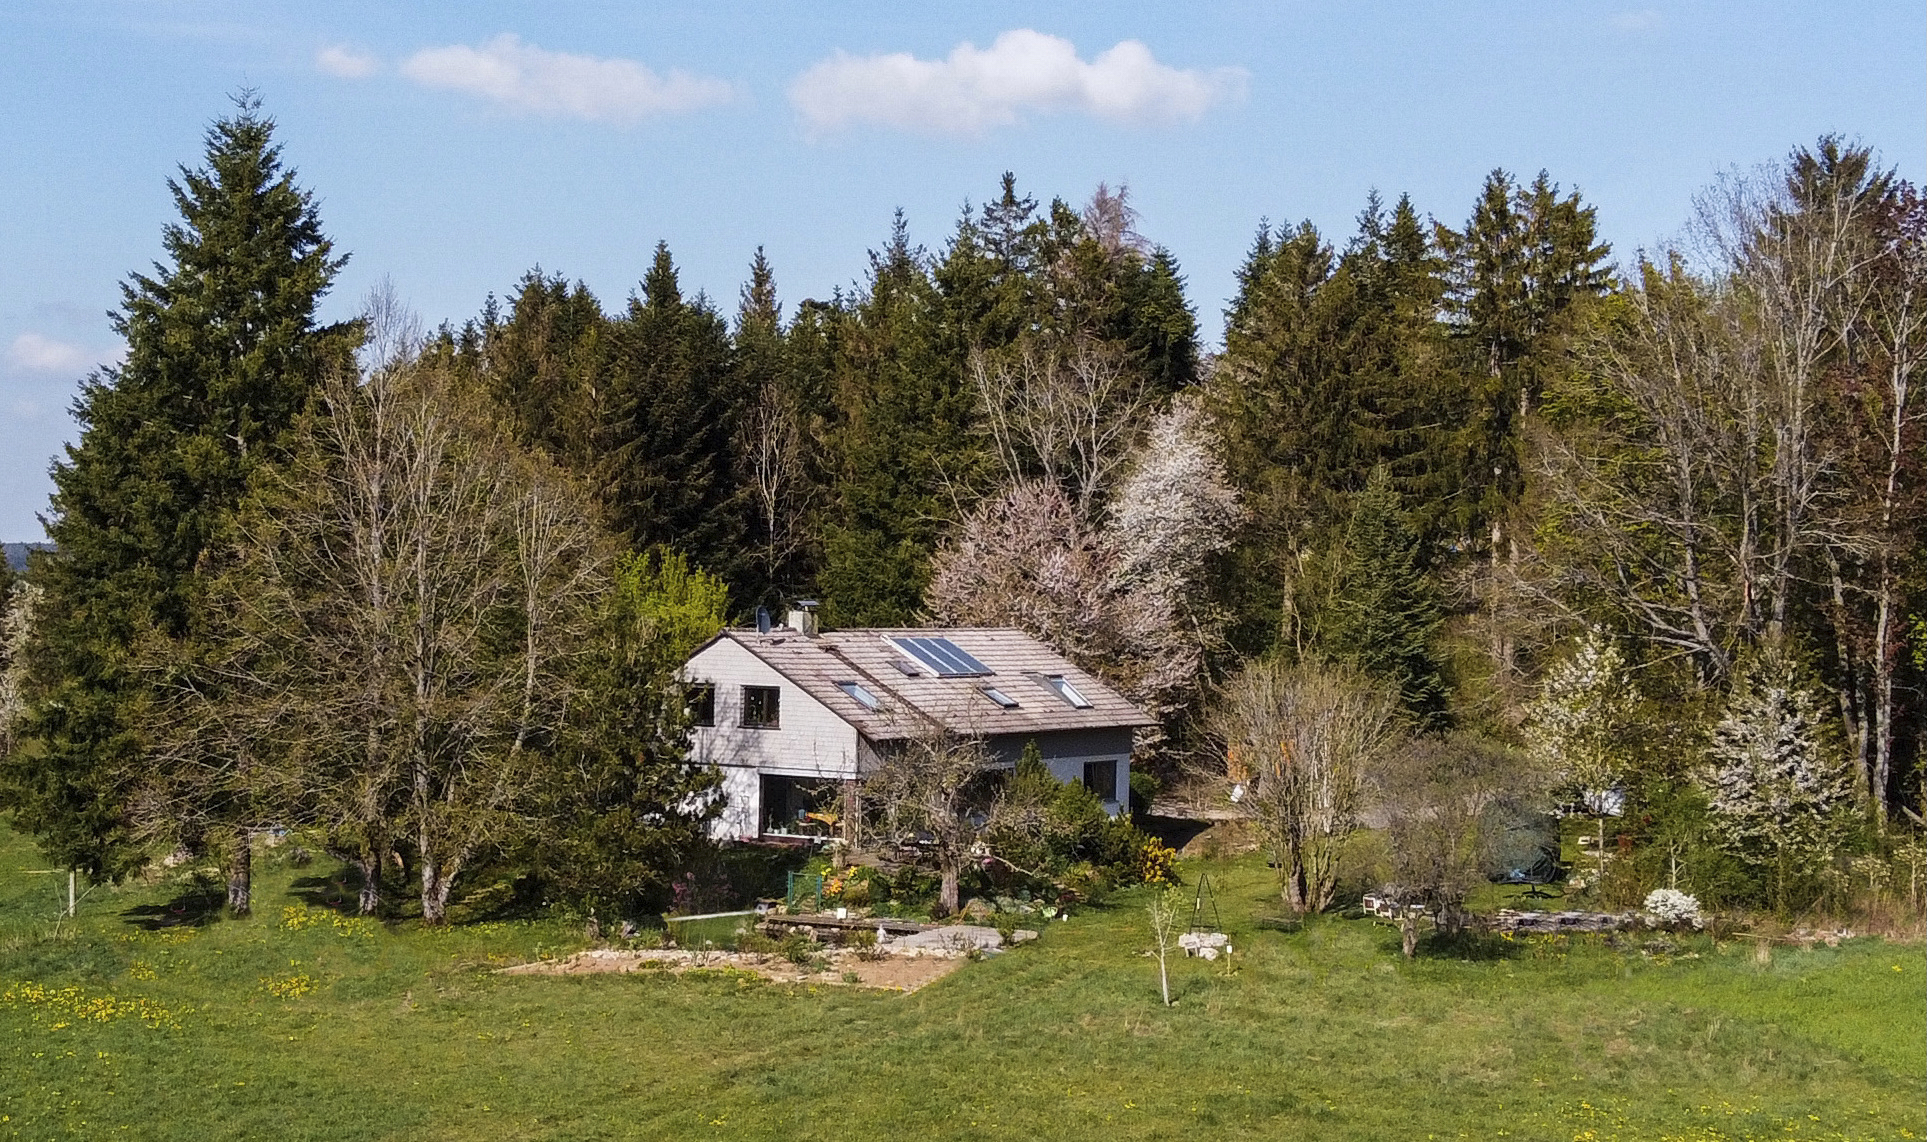 Großaufnahme des zweistöckigen Waldhauses, mit Gartenanlage im Vordergund und Waldbereich im Hintergrund